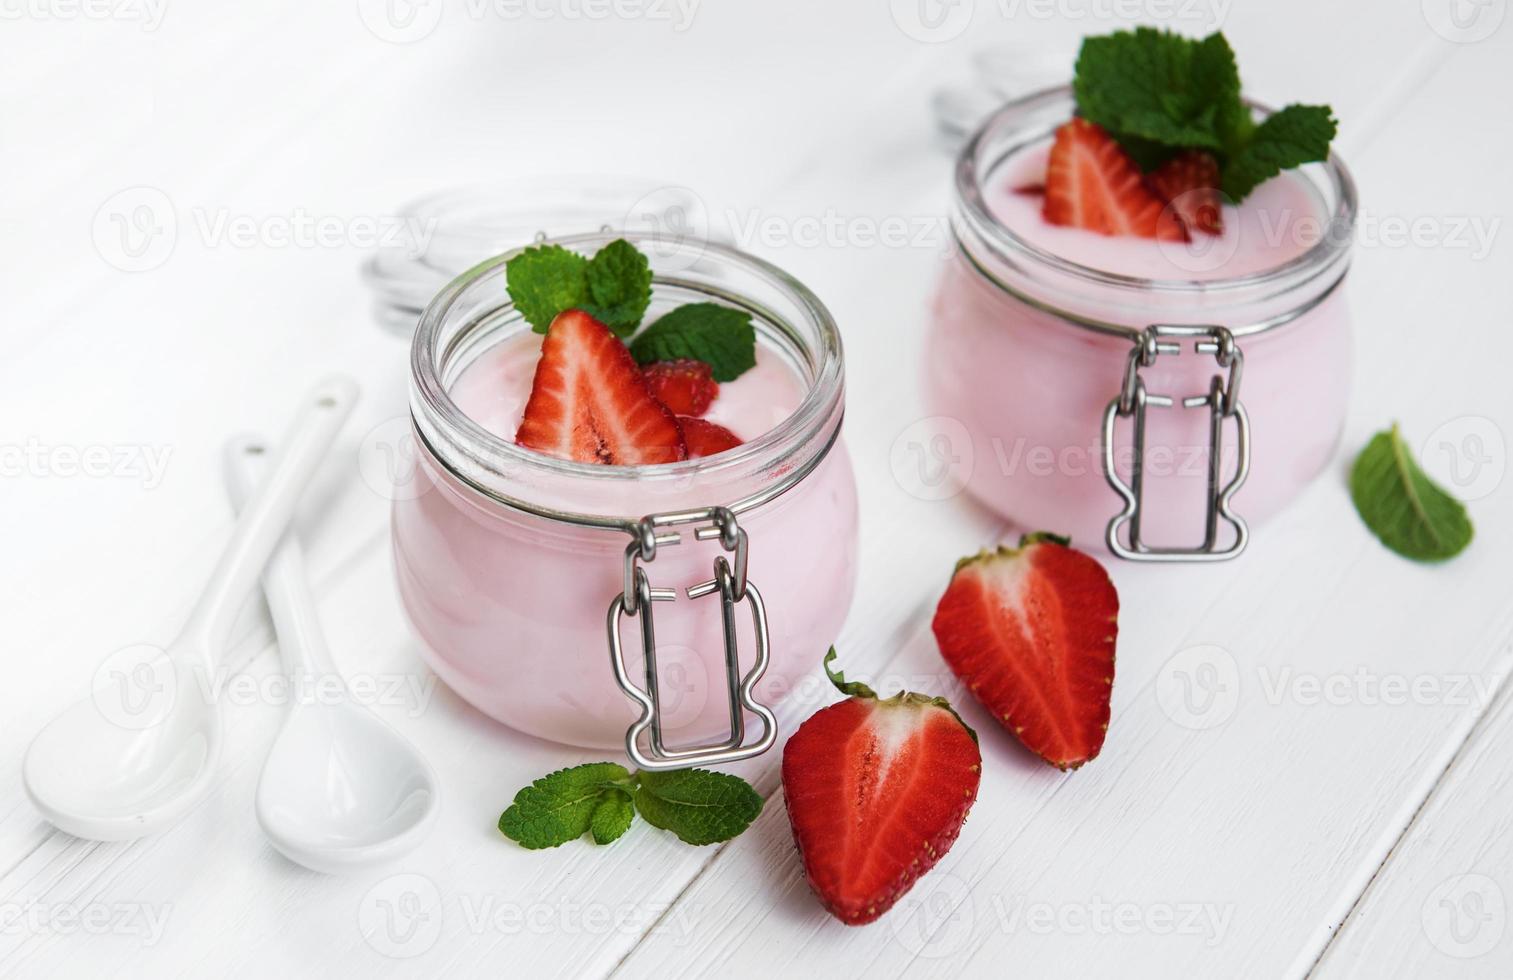 pots de yaourt à la fraise photo